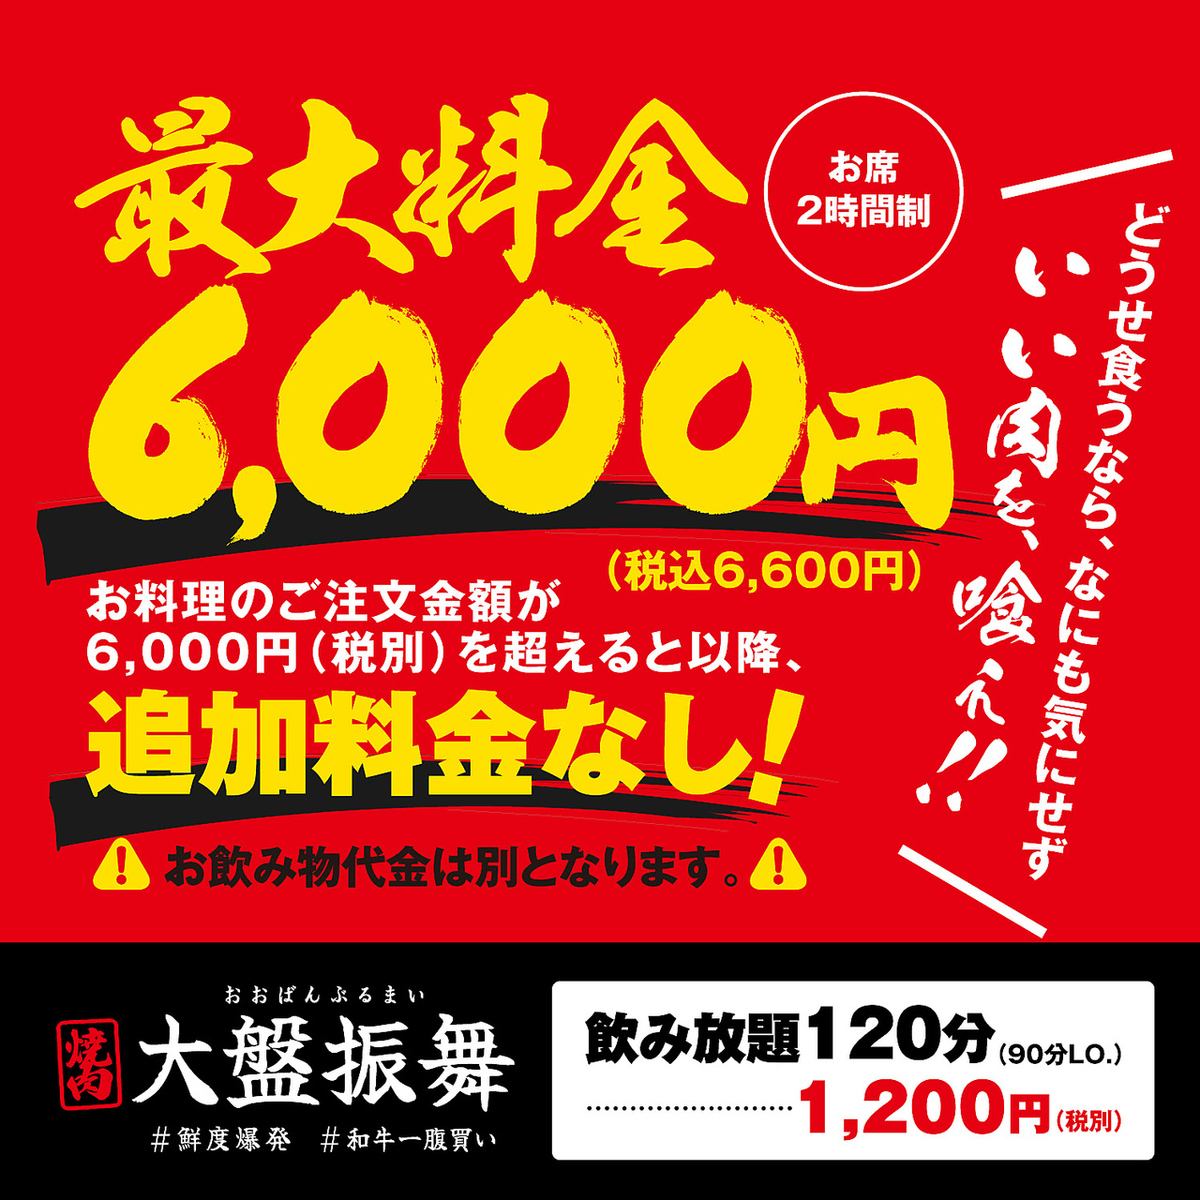 定价烤肉！每人不接受超过6,600日元（含税）的餐食！不包括饮料。